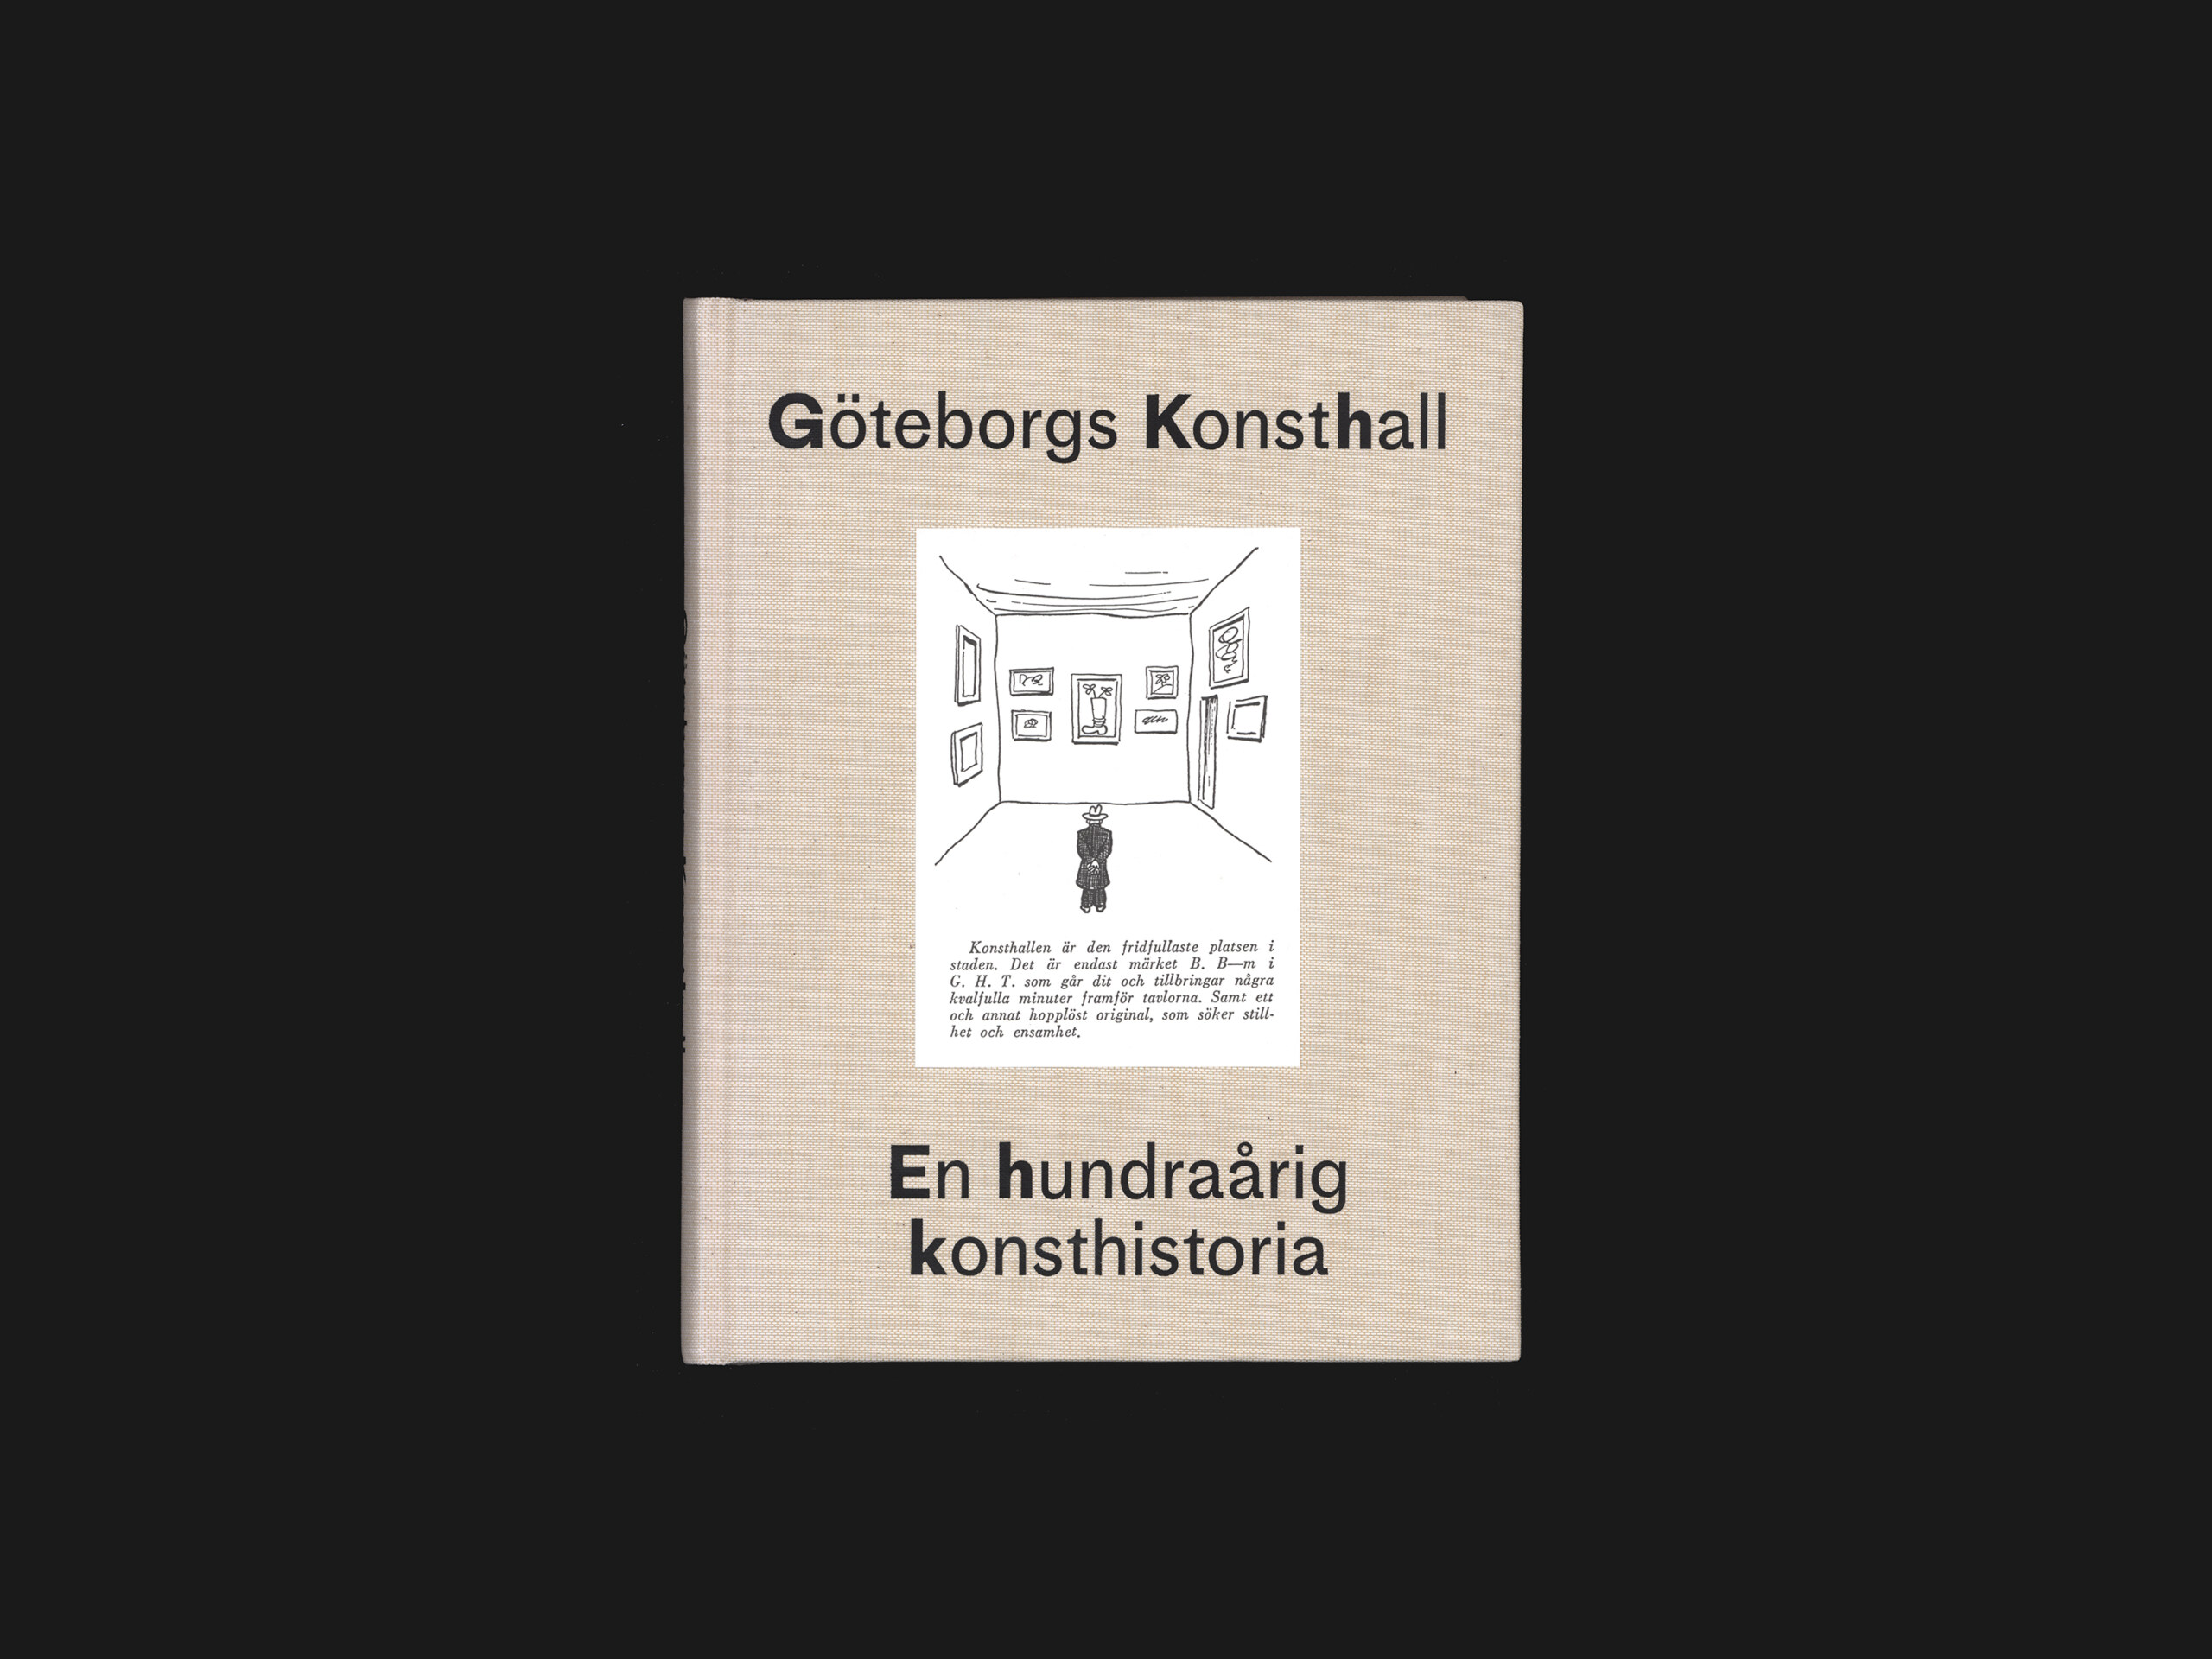 Göteborgs konsthall: En hundraårig konsthistoria